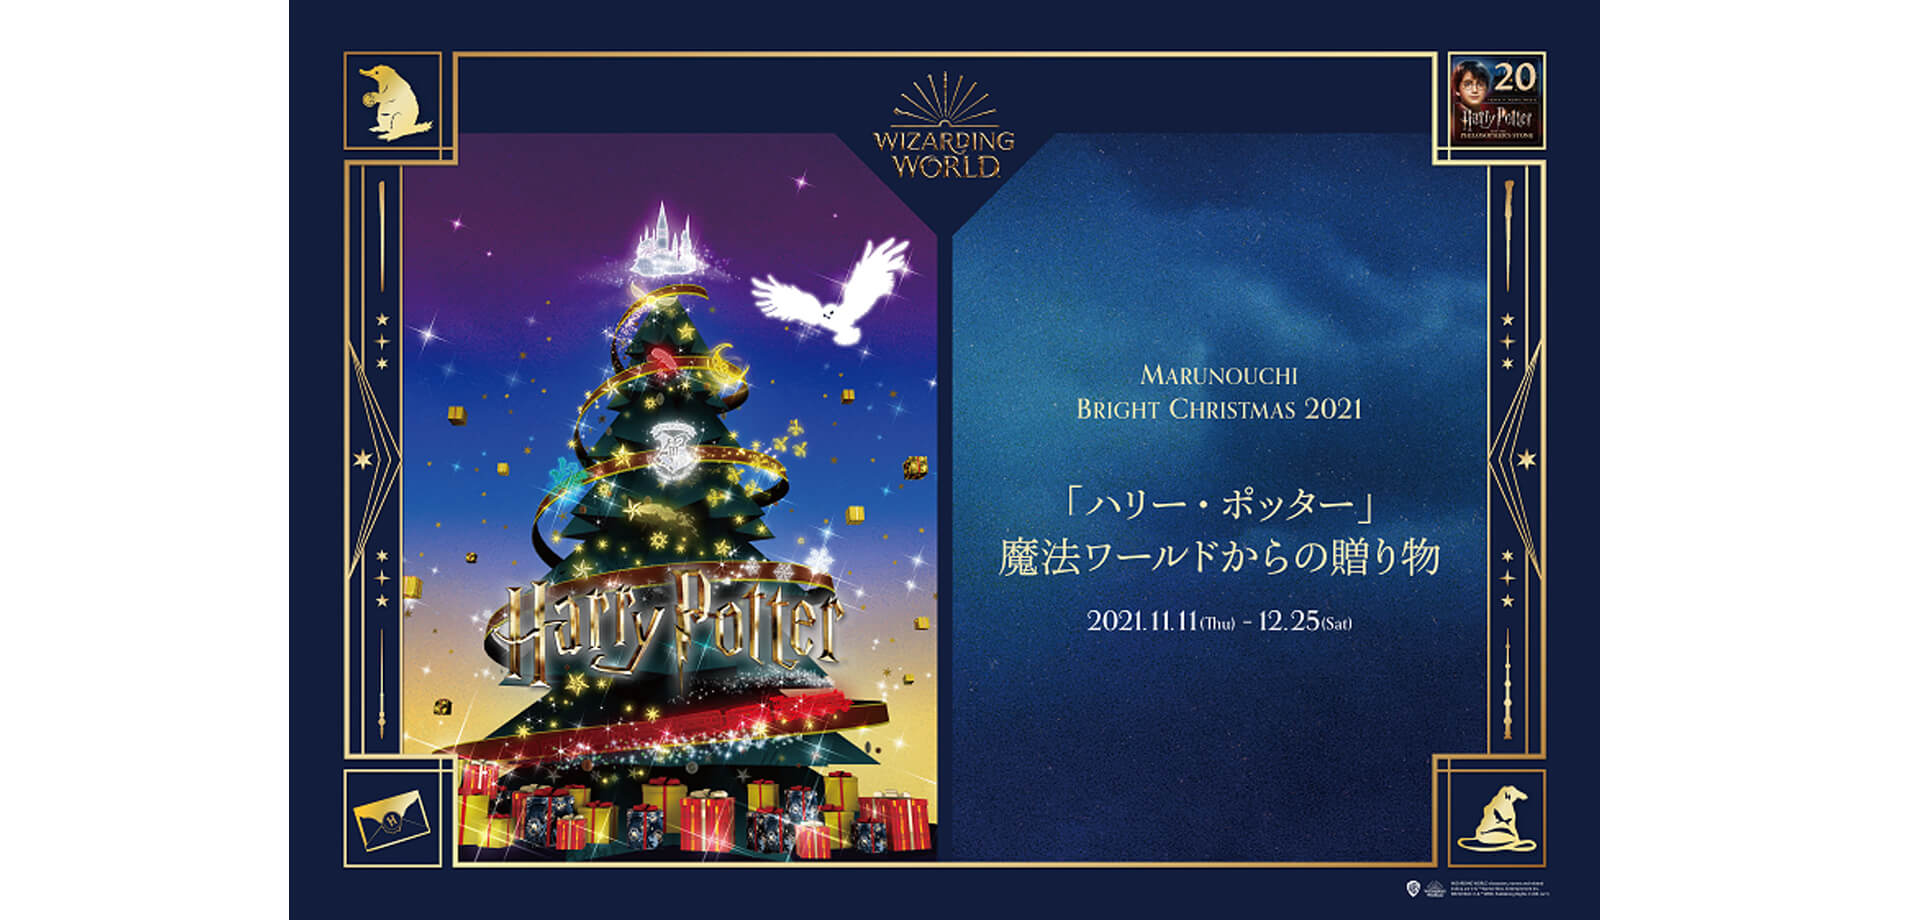 Marunouchi Bright Christmas 2021「ハリー・ポッター」魔法ワールドからの贈り物